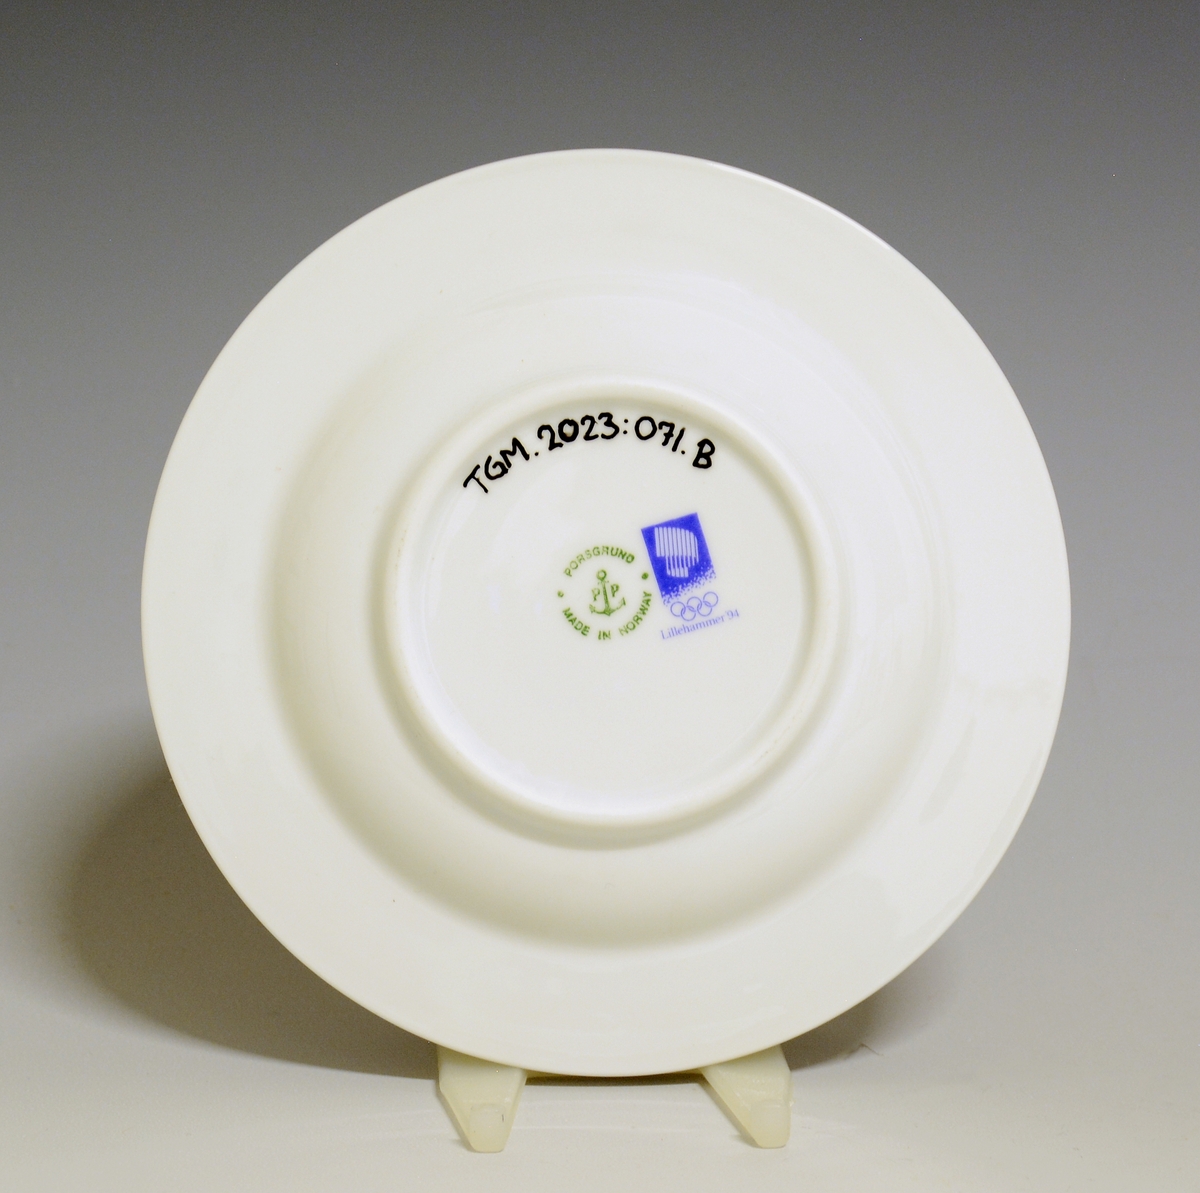 Kaffeskål av porselen med hvit glasur. Dekorert med den offisielle dekoren til Lillehammer OL 1994, rand i blått, grønt og rosa.
Modell: Saturn av Grete Rønning.
